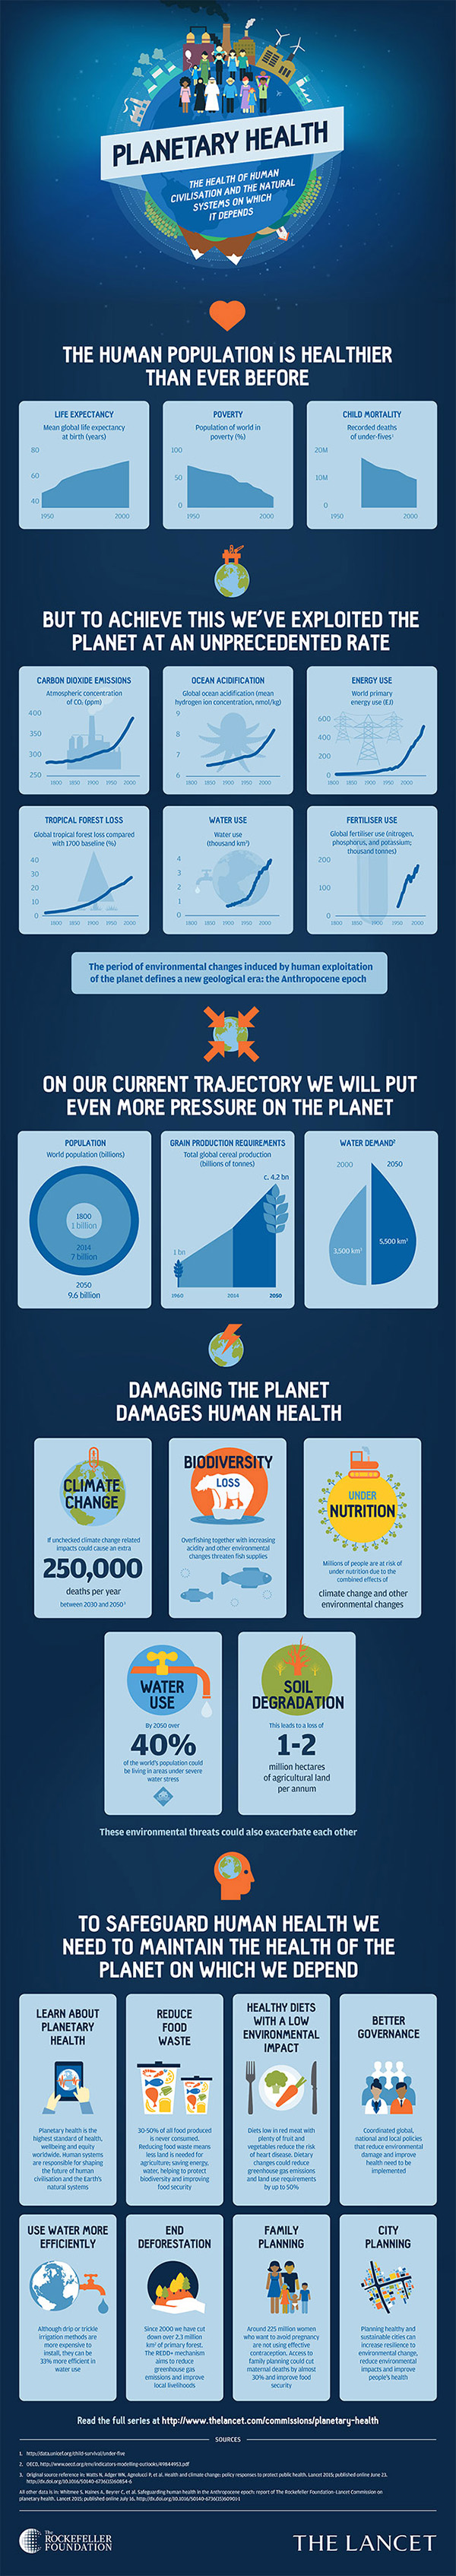 Lancet commission infographic